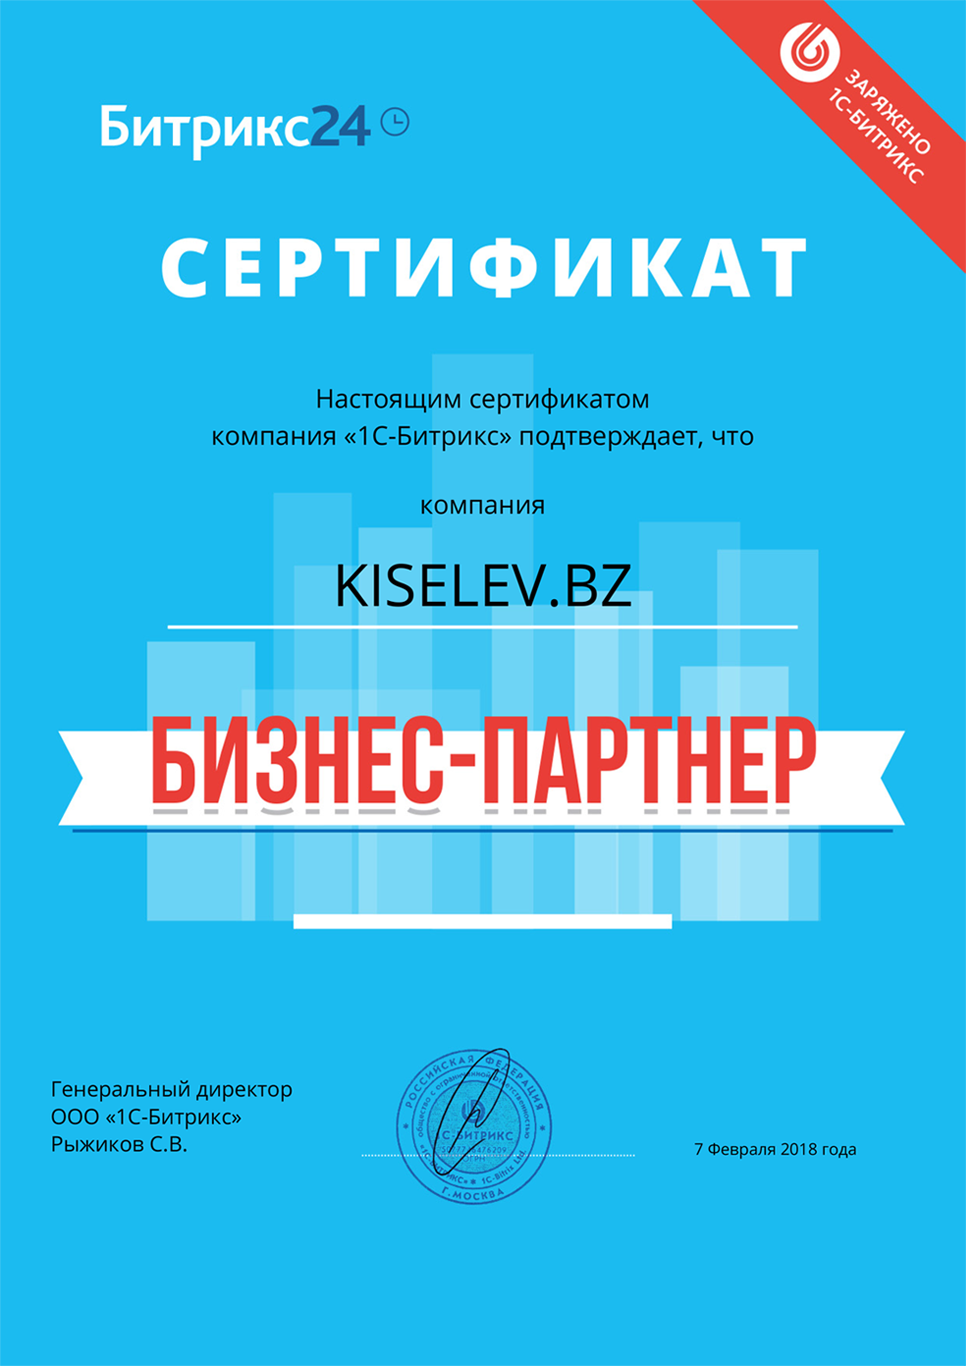 Сертификат партнёра по АМОСРМ в Воронеже